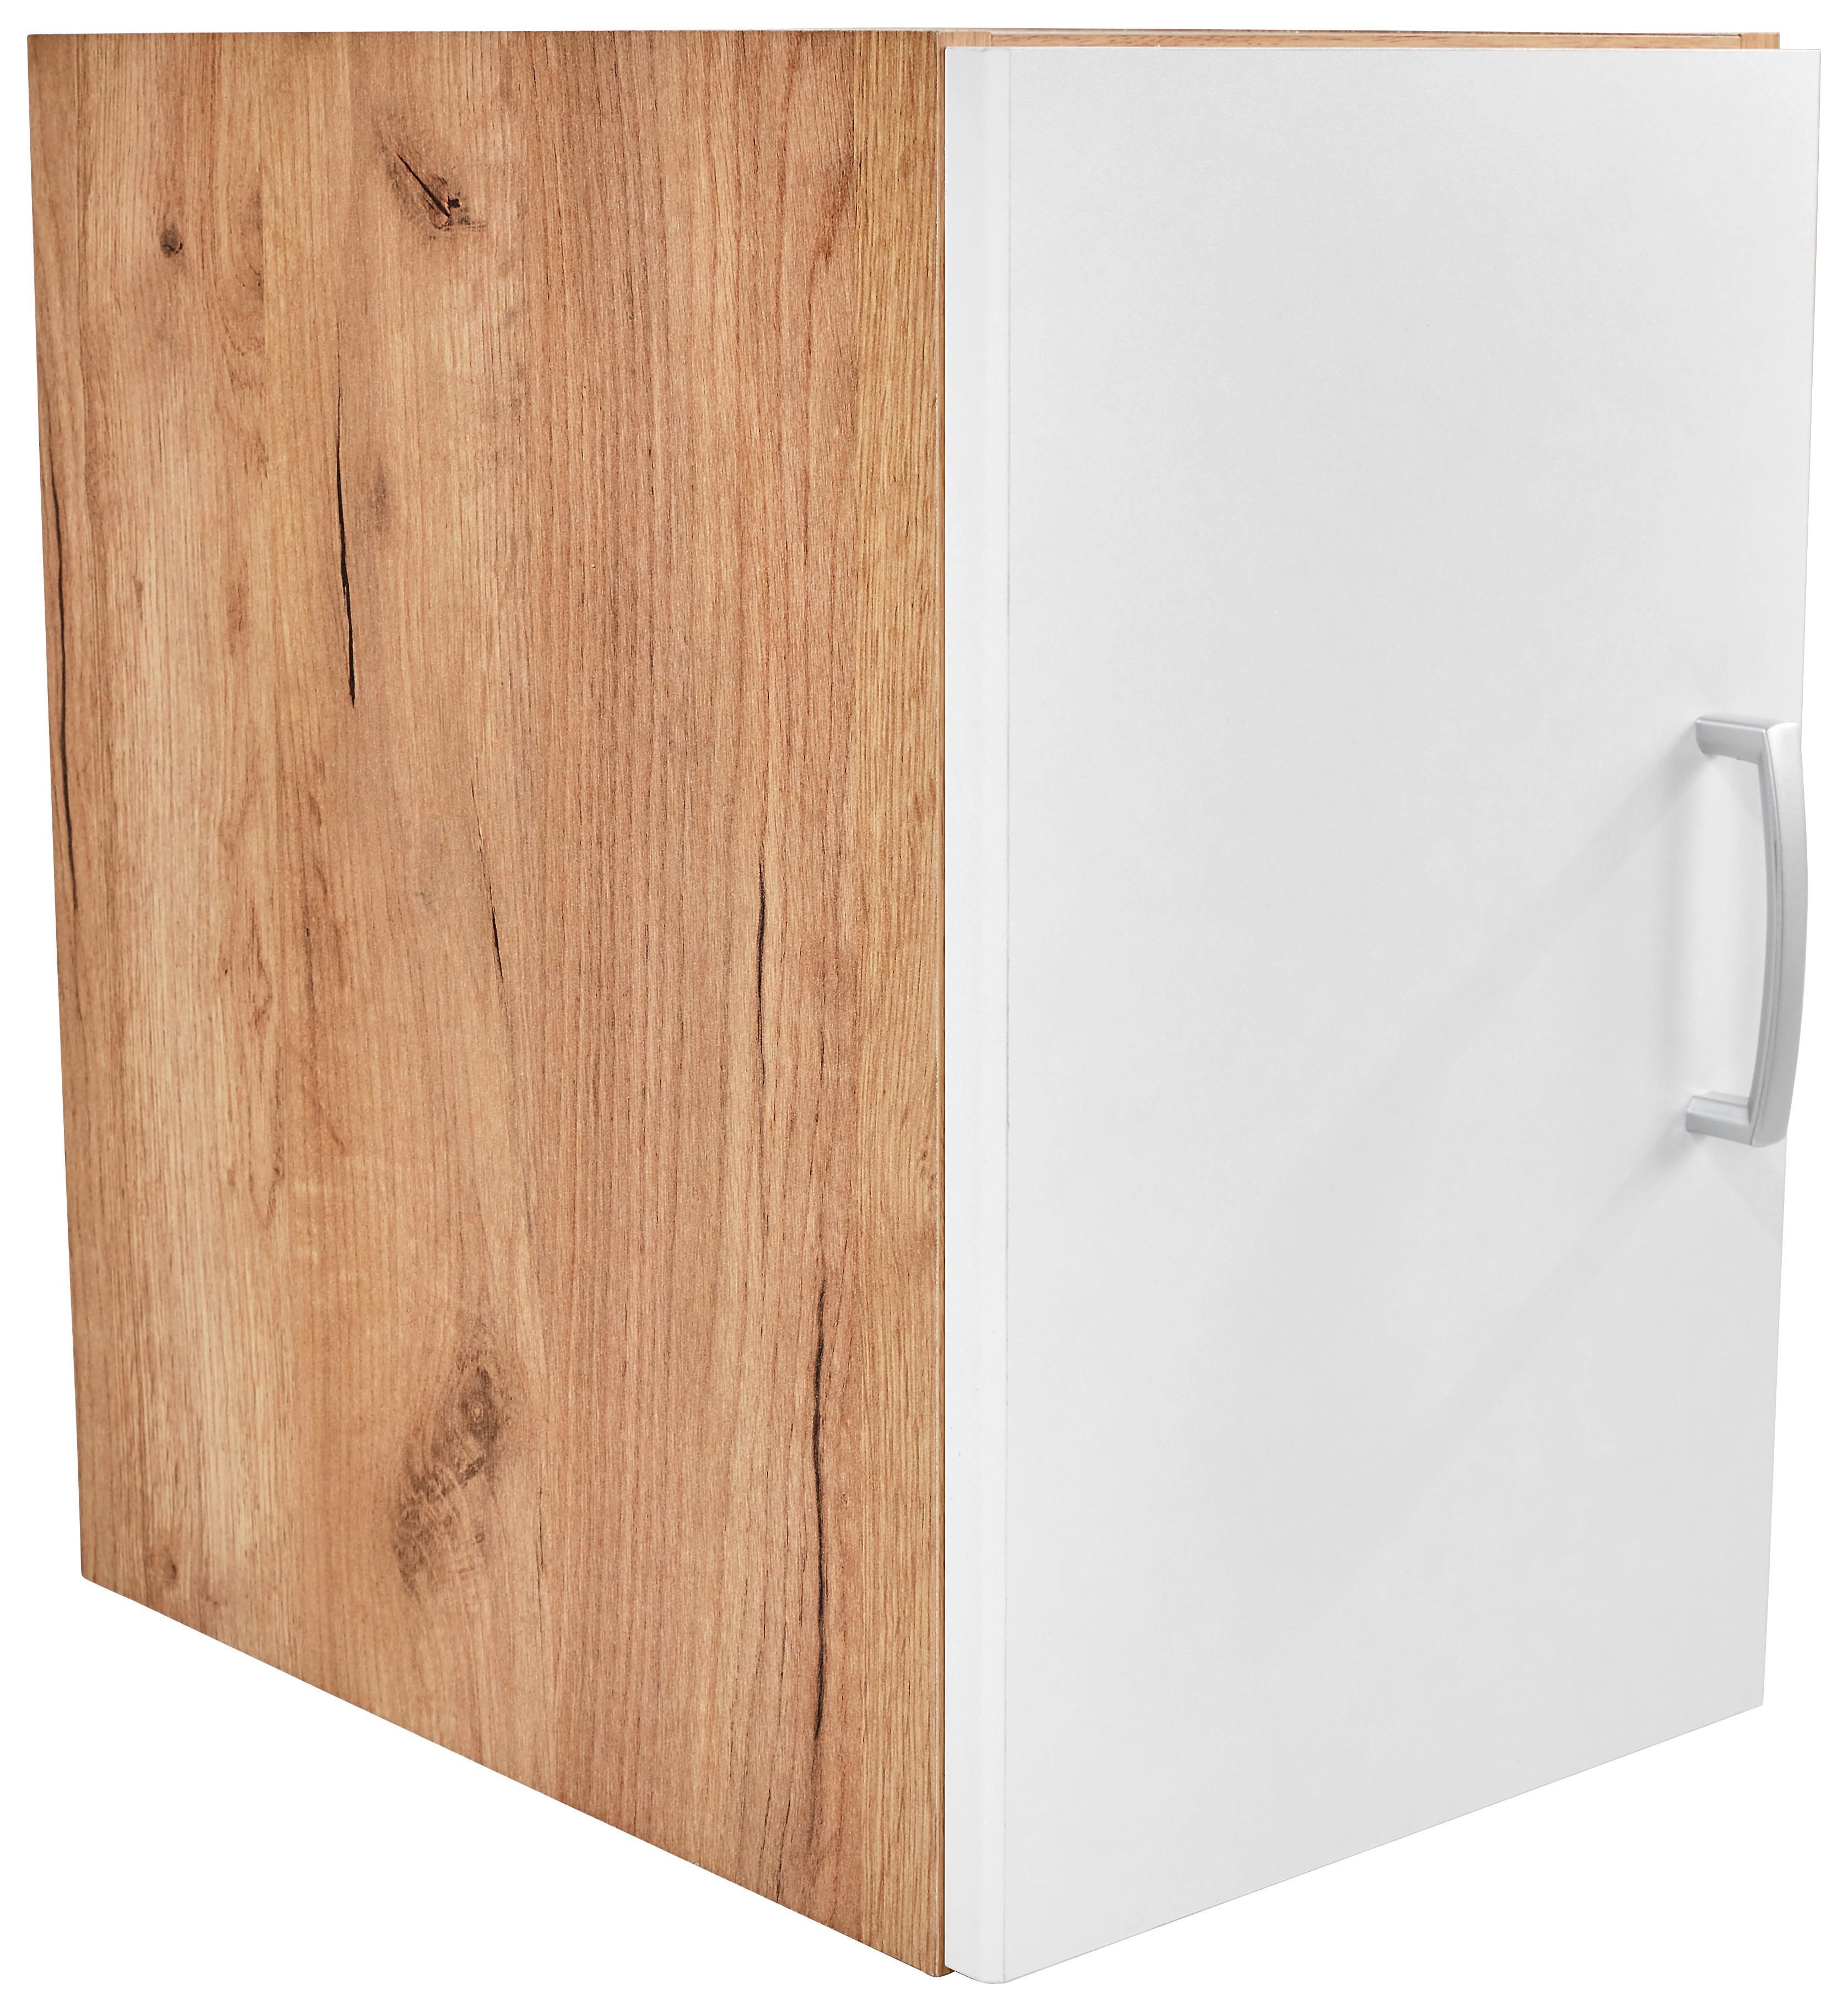 Dulap auxiliar superior Tio - alb/culoare lemn stejar, Konventionell, material pe bază de lemn (30/43/37,5cm)